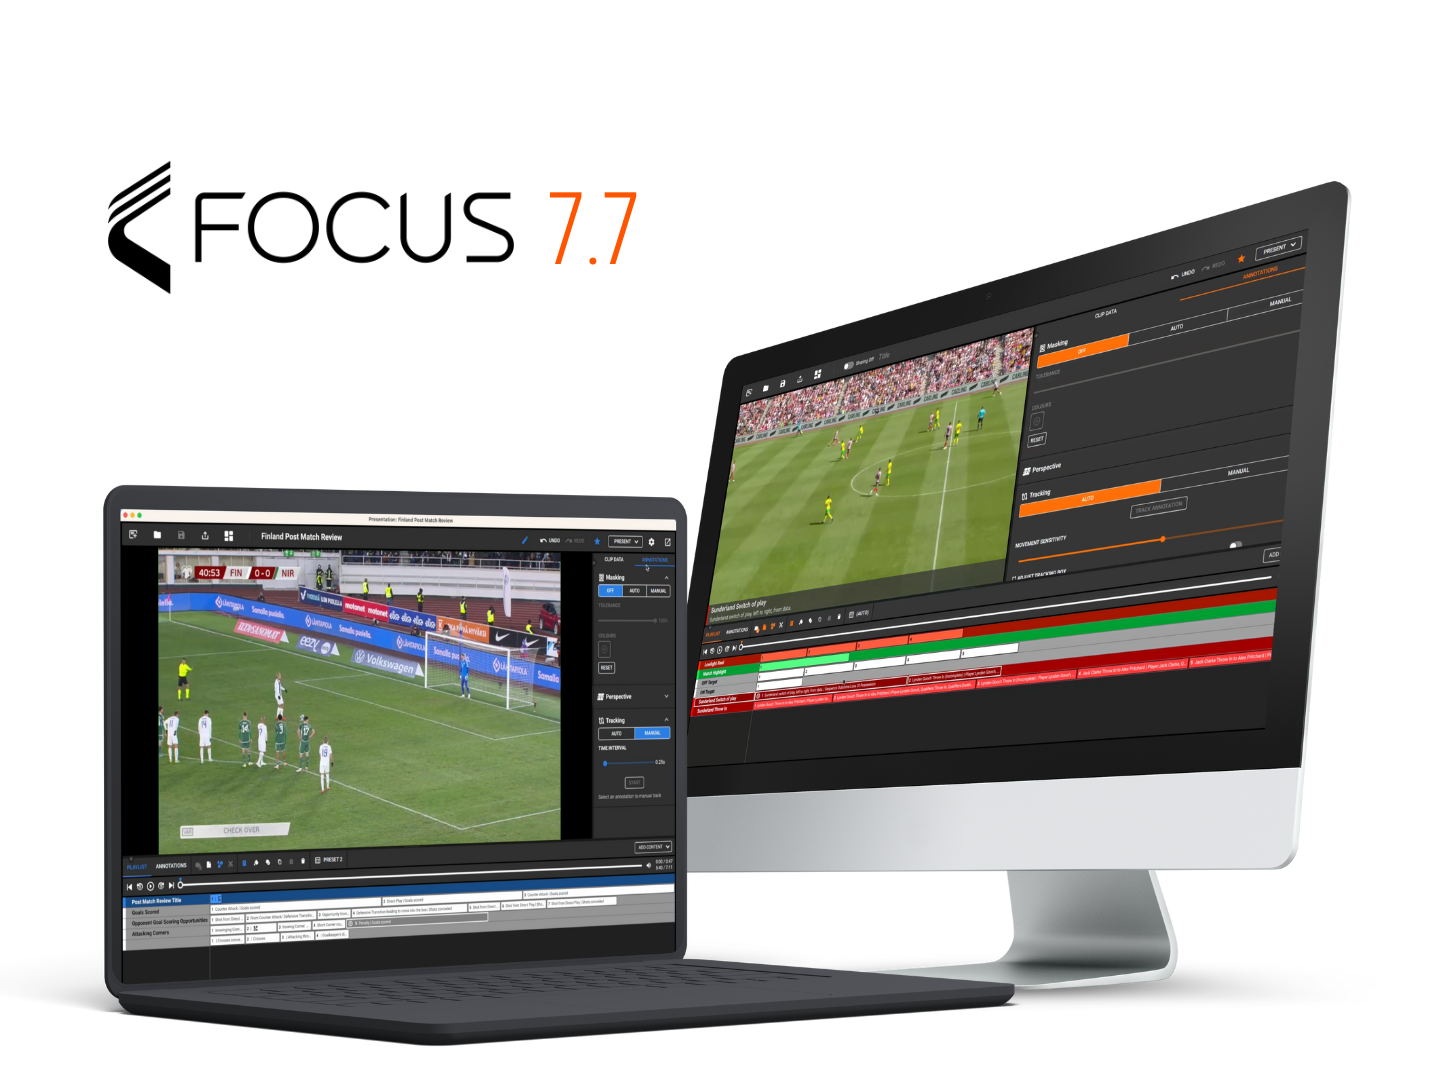 Vários dispositivos, incluindo laptop, desktop e smartphone, exibindo interfaces de análise de futebol da plataforma Focus 7.7. Os dispositivos estão dispostos em um padrão circular com fundo laranja.